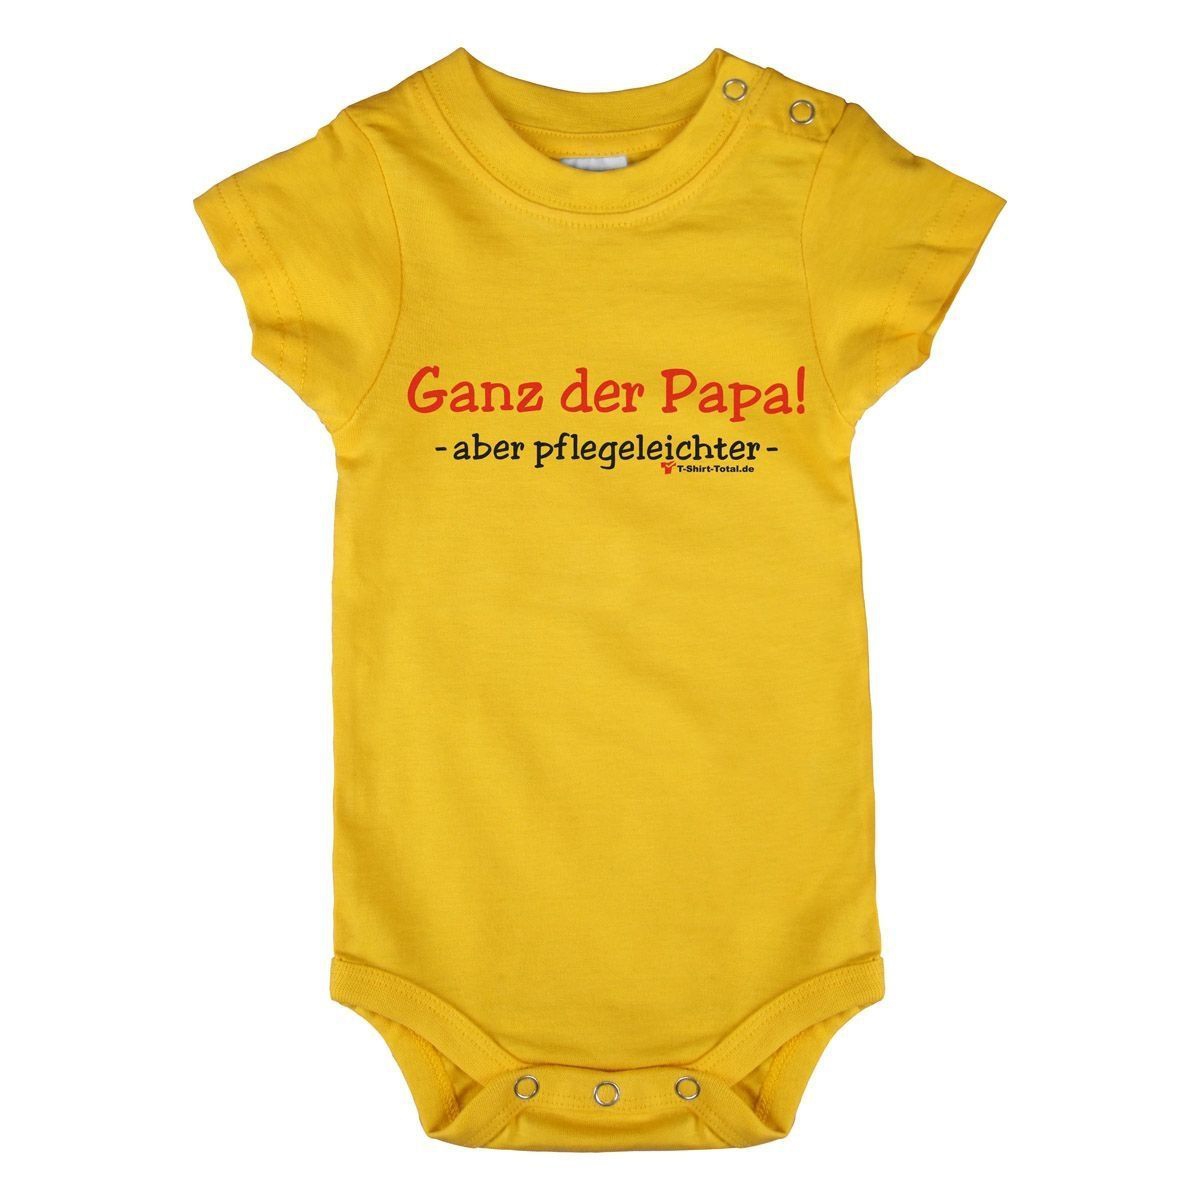 Ganz der Papa Baby Body Kurzarm gelb 68 / 74